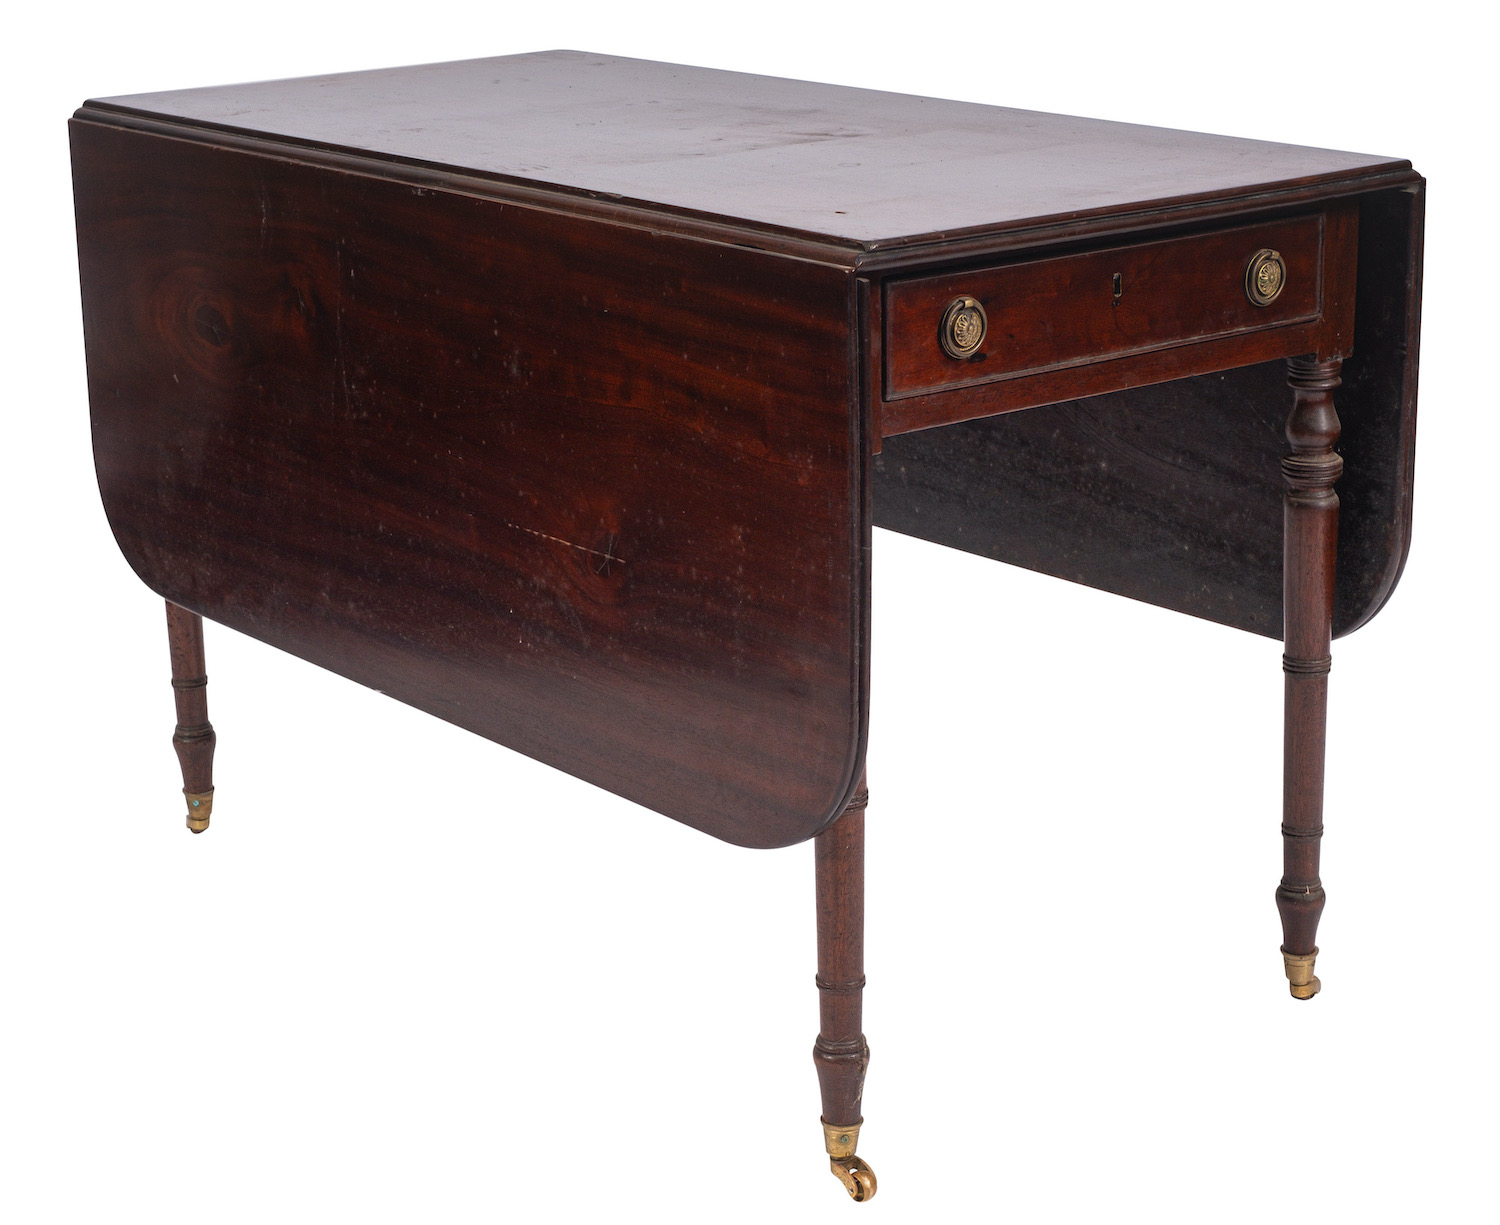 A Regency mahogany Pembroke dining table